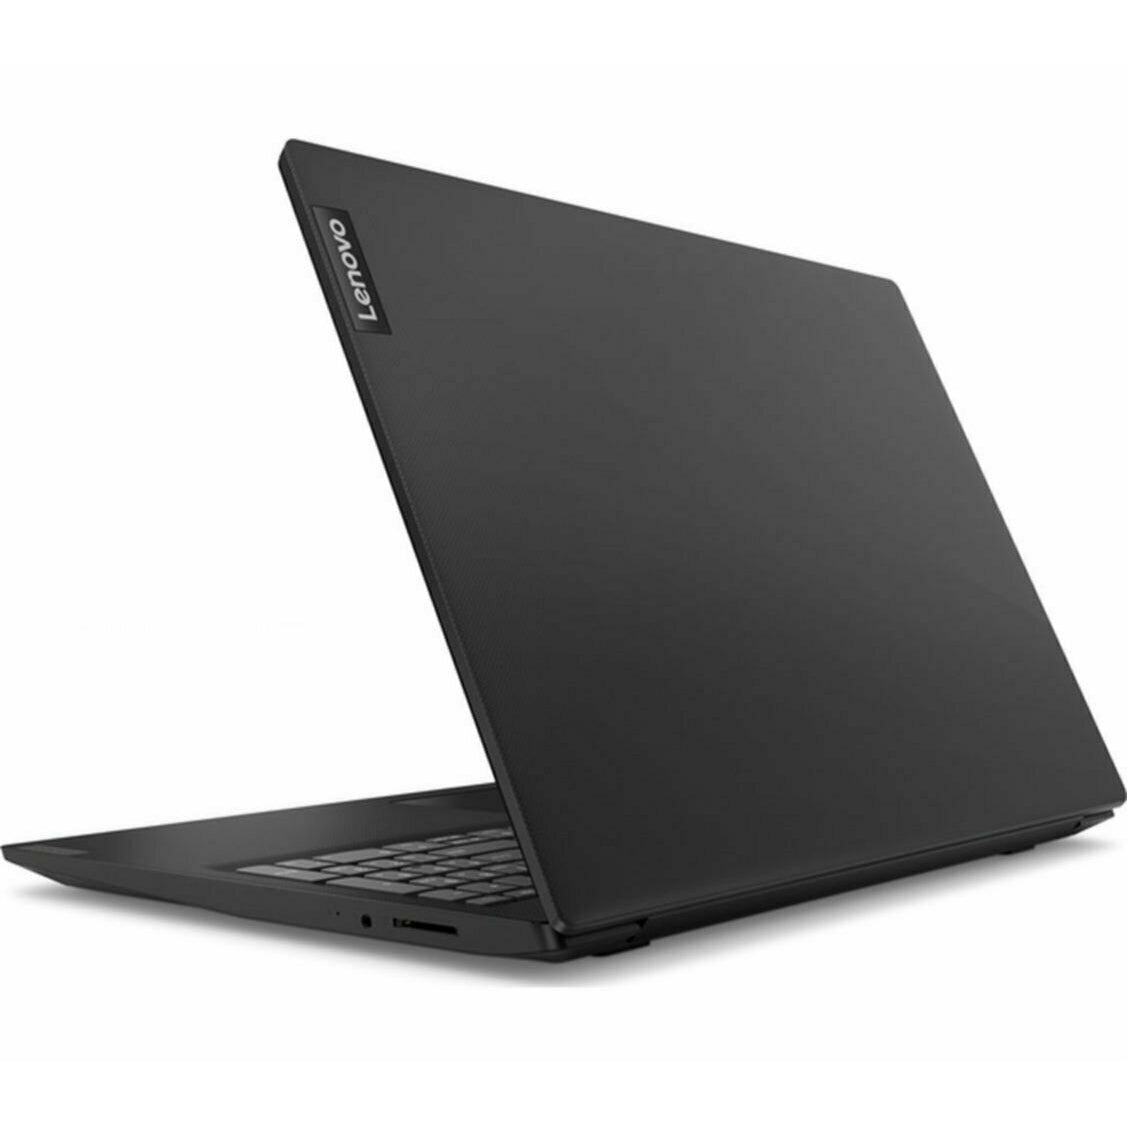 Lenovo IdeaPad S145-15API Laptop, AMD Athlon, 8GB RAM, 1TB HDD, 15.6" (81UT008TUK)- Black